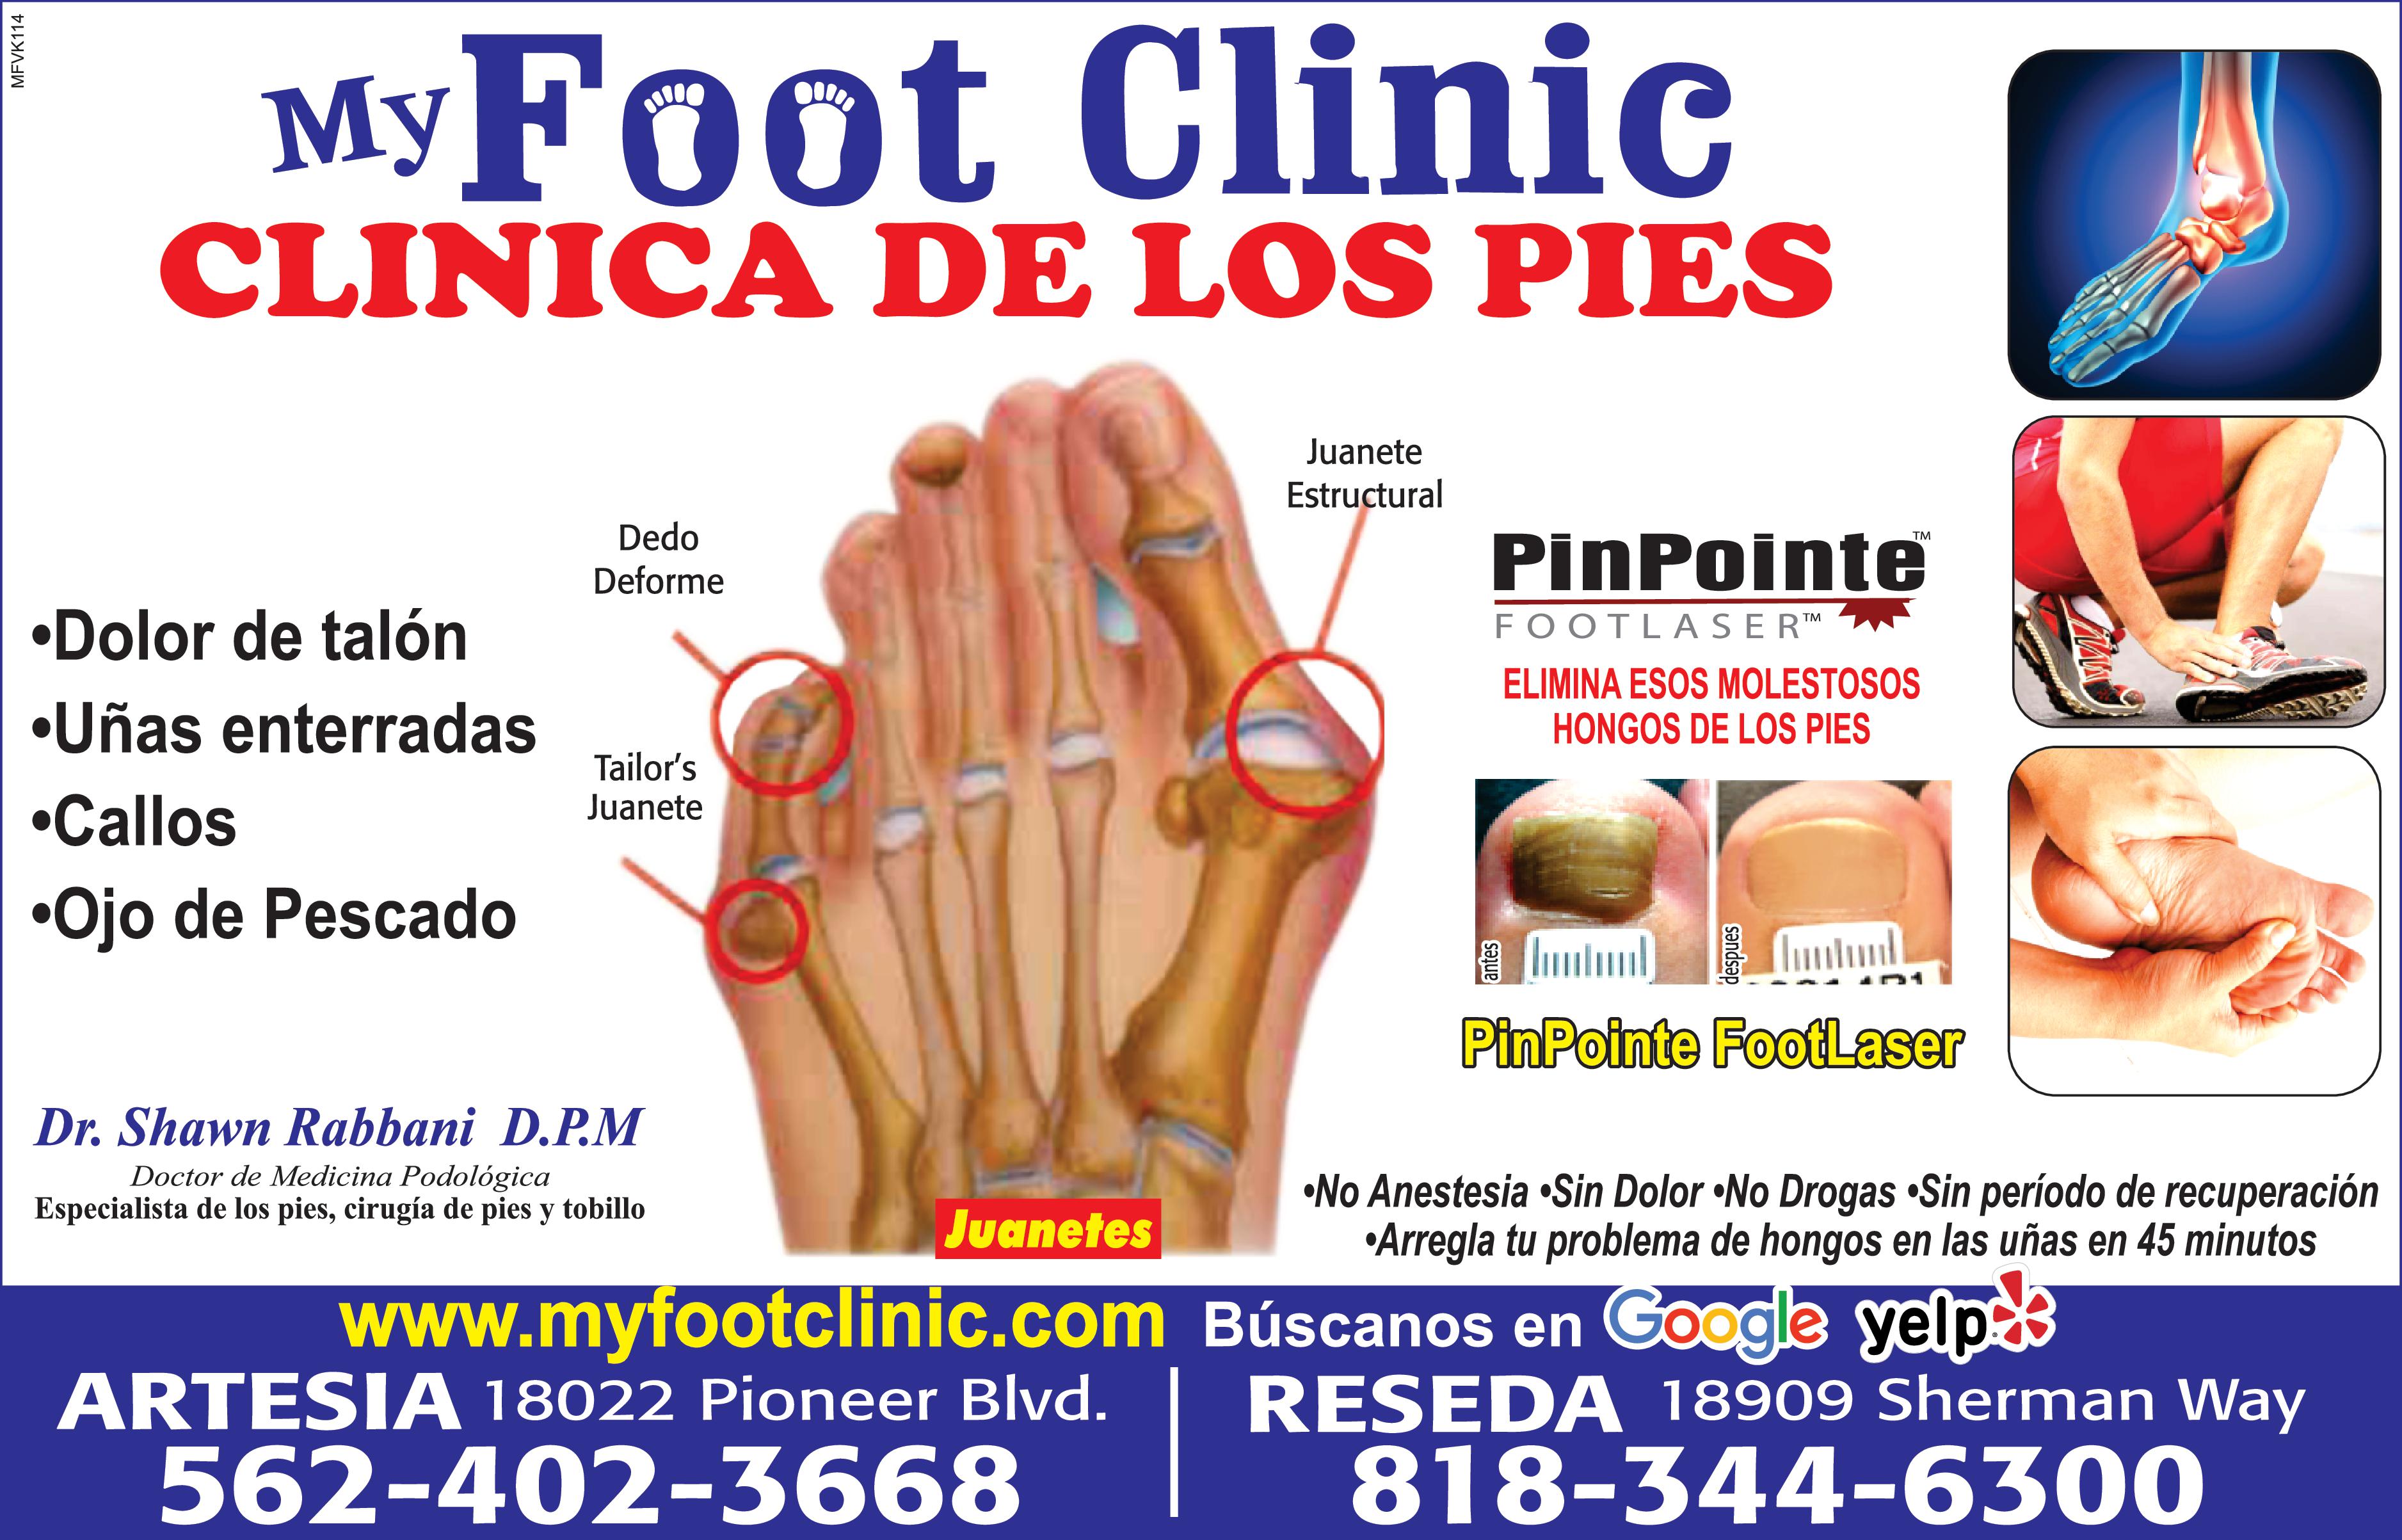 MFVK114 My Foot Clinic CLINICA DE LOS PIES Dolor de talón Dedo Deforme Uñas enterradas Callos Ojo de Pescado Tailor